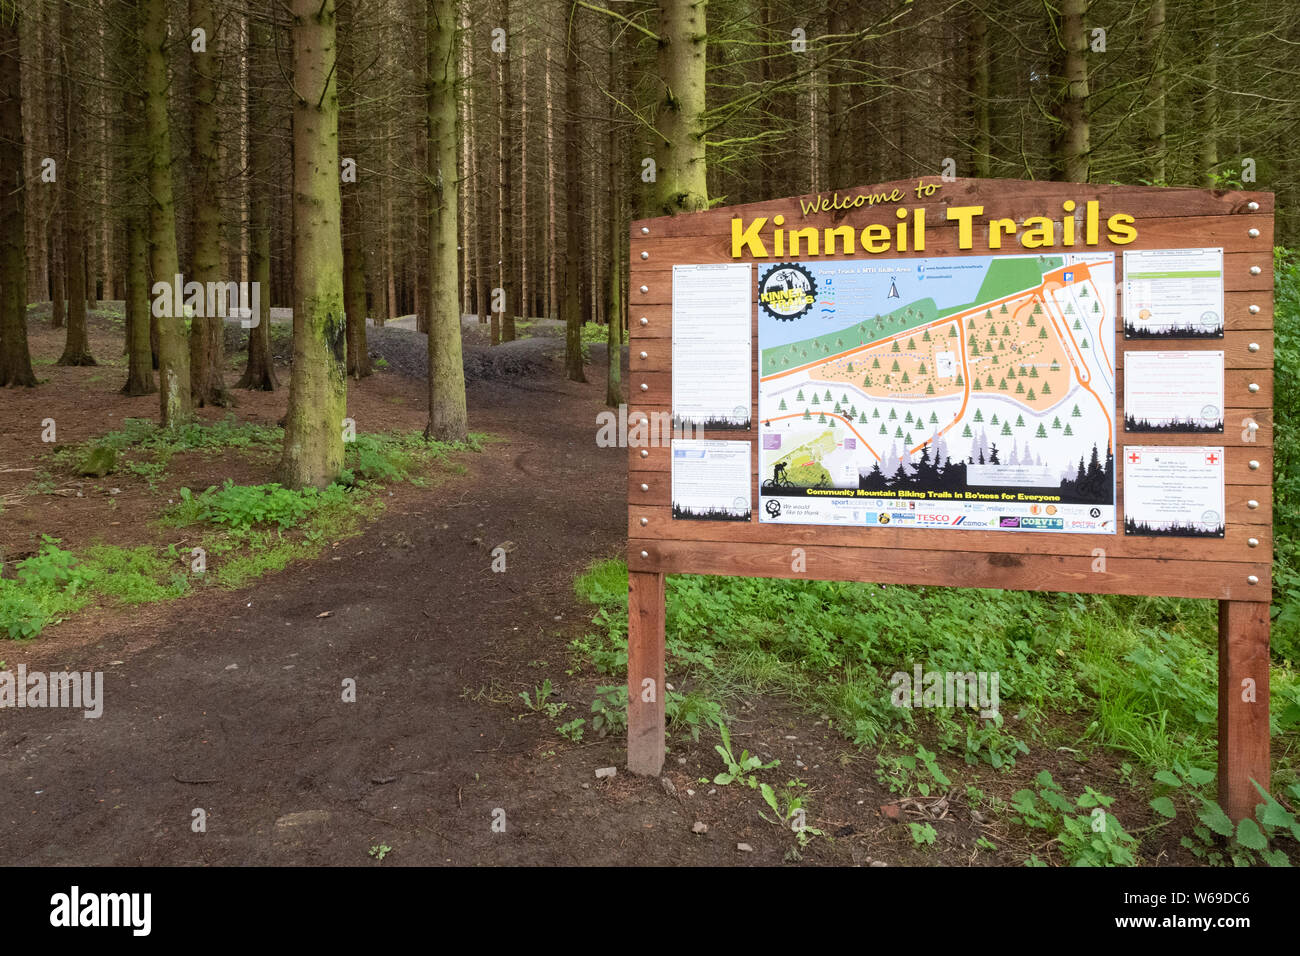 Des sentiers de Kinneil - Pump Track et vtt domaine de compétences - Kinneil Woods, Bo'ness, Falkirk, Ecosse, Royaume-Uni Banque D'Images